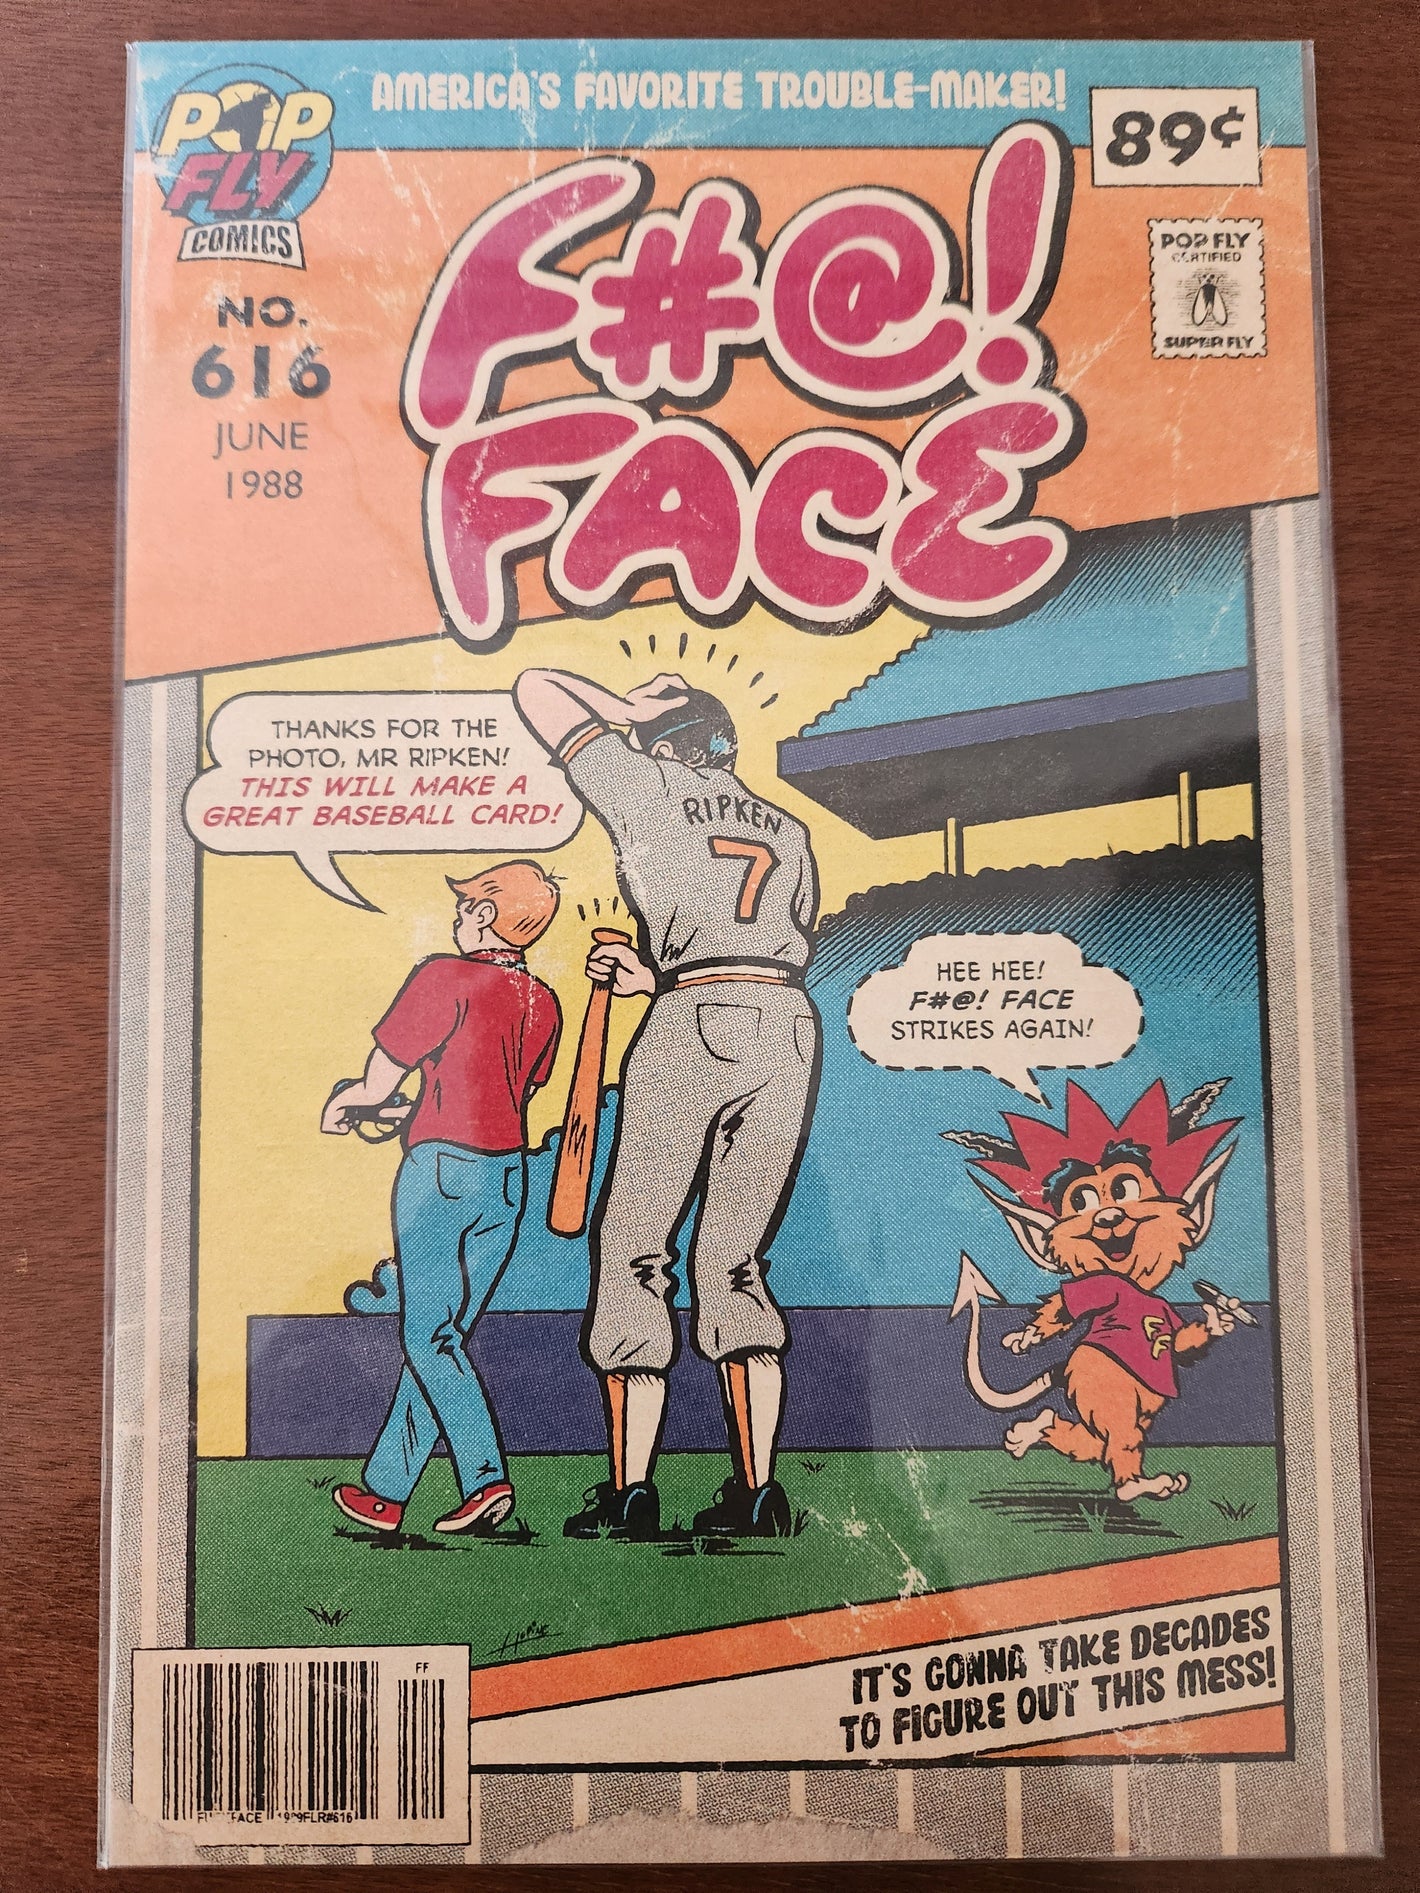 「F#@! Face」1989 フライア ビリー リプケン エラー ポップ フライ ポップ ショップ プリント #33 – ダニエル ジェイコブ ホラインの署名